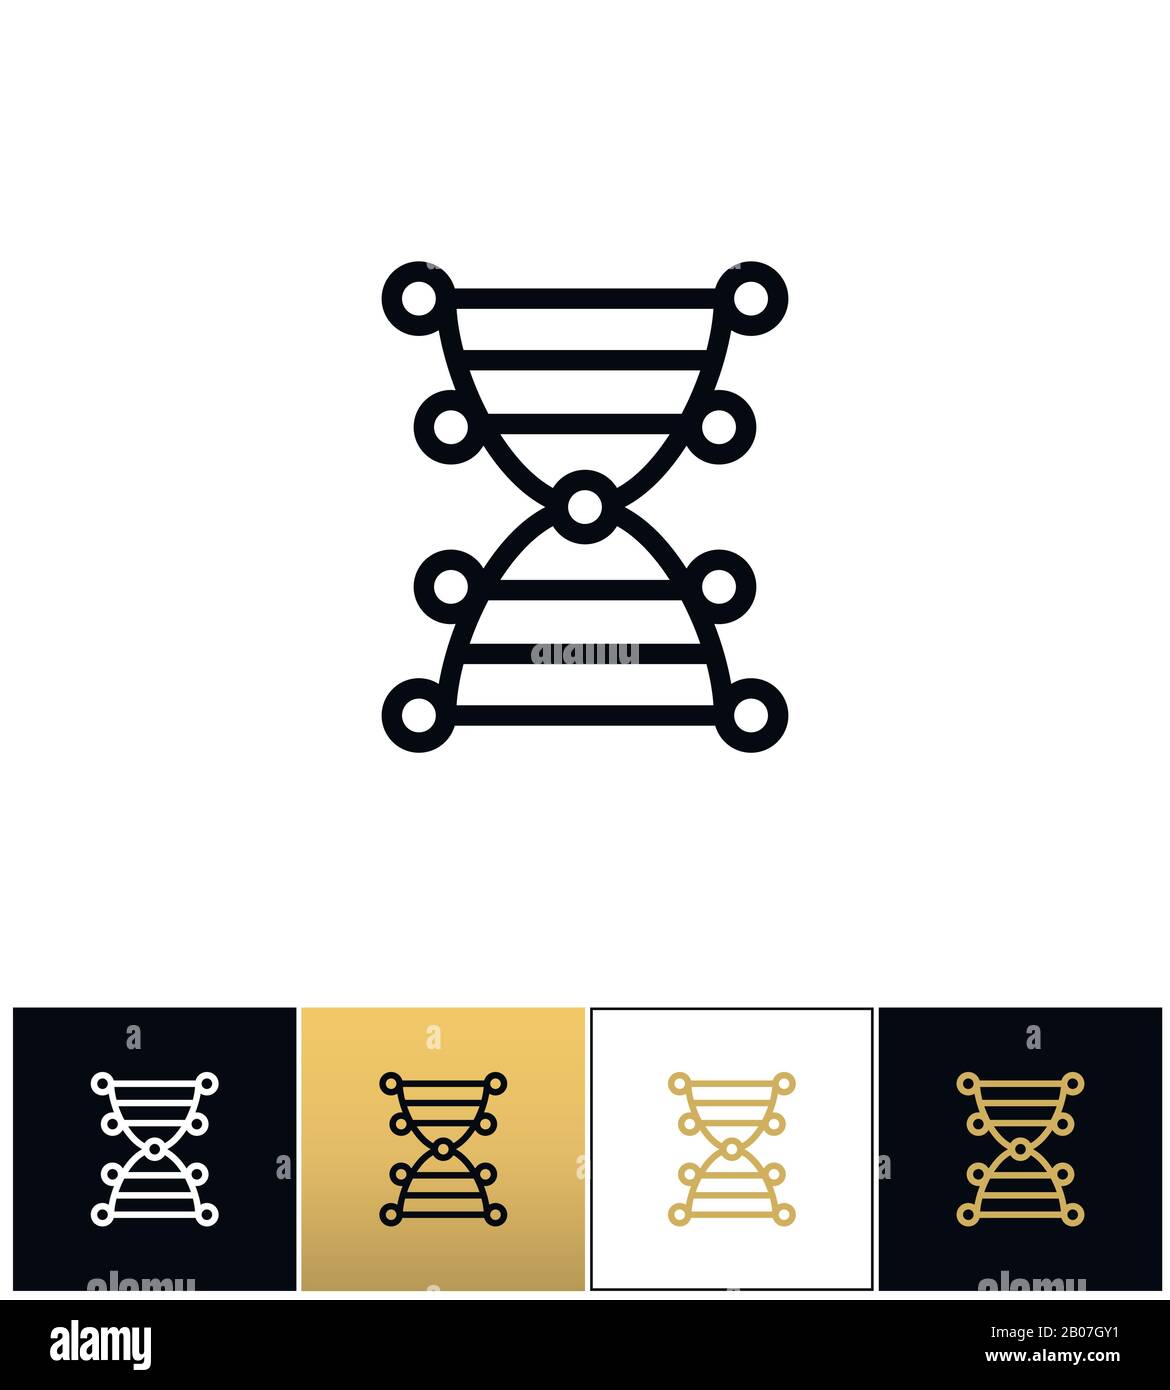 DNA-Genetik Symbol für den Chromosomencodevektor. Piktogramm "DNA-Genetik" des Chromosomencodes auf schwarzem, weißem und goldenem Hintergrund Stock Vektor